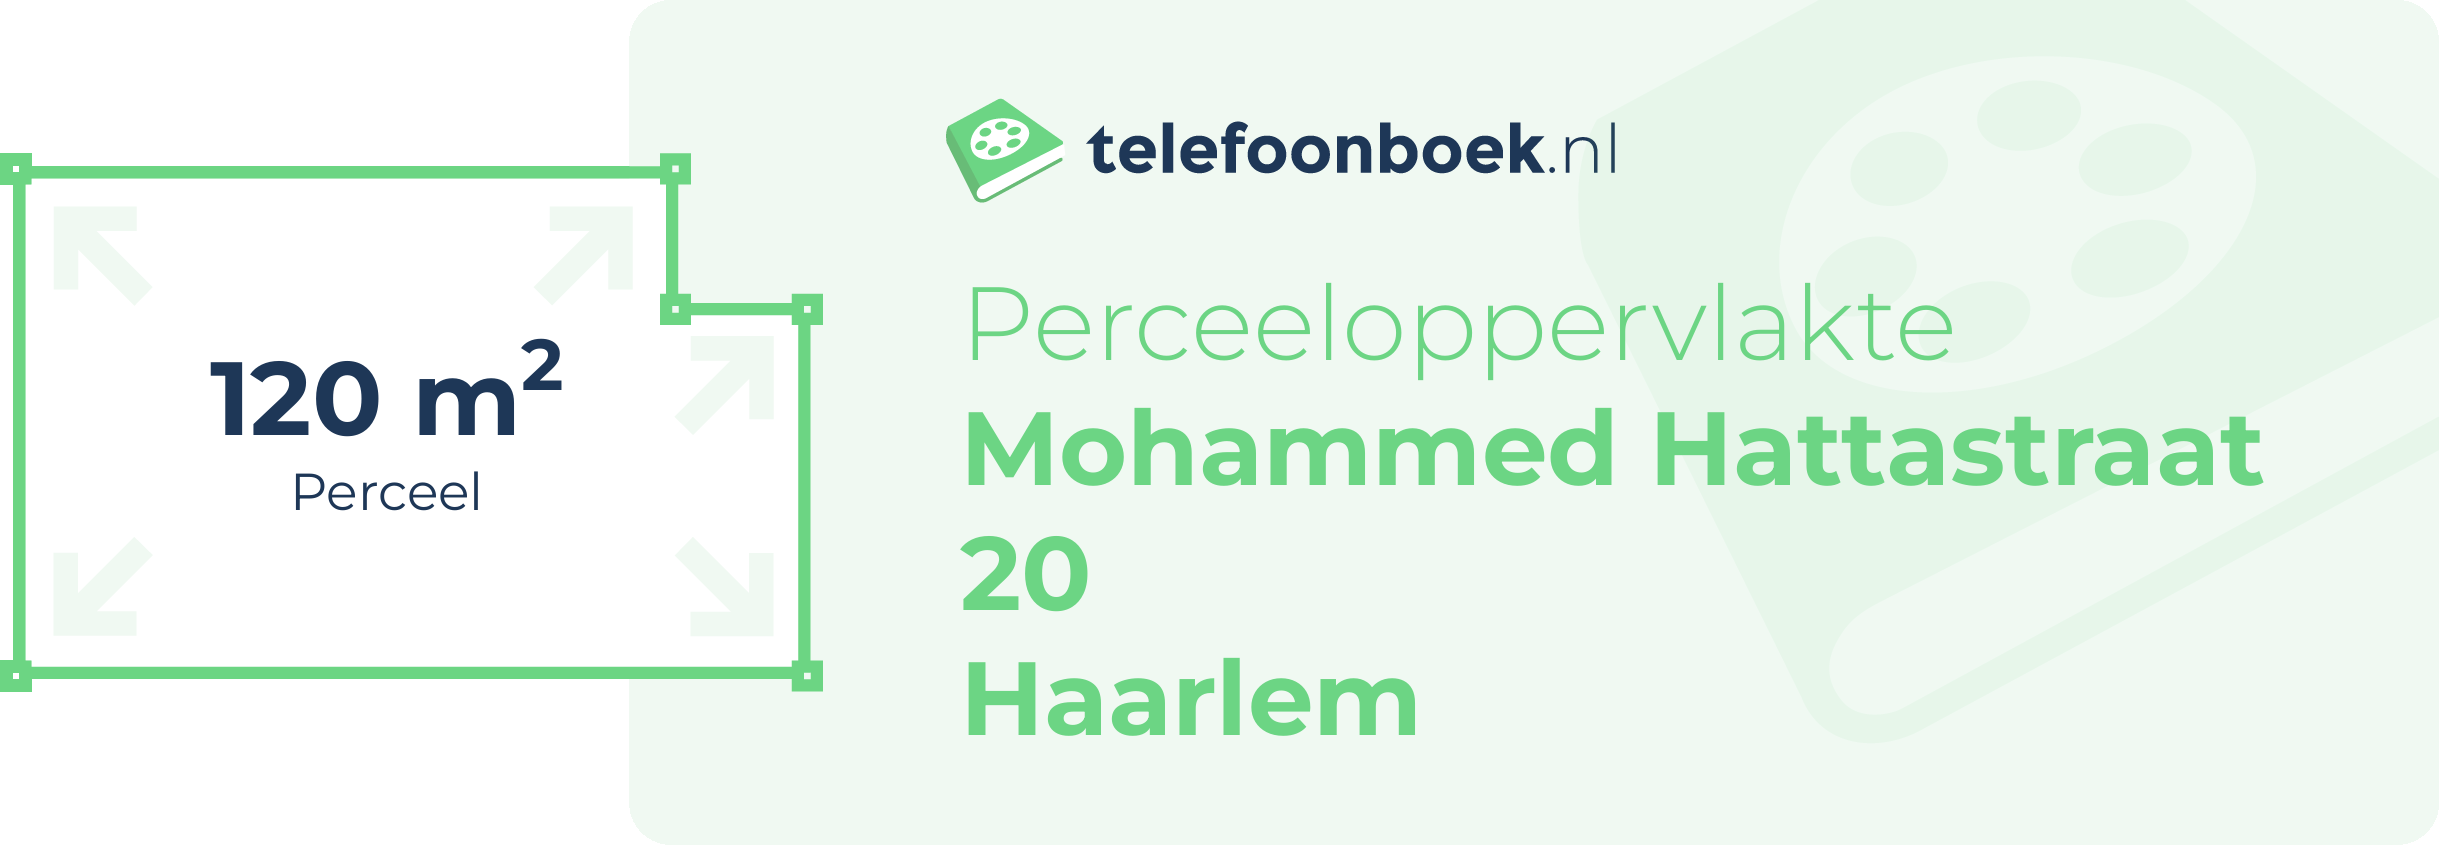 Perceeloppervlakte Mohammed Hattastraat 20 Haarlem